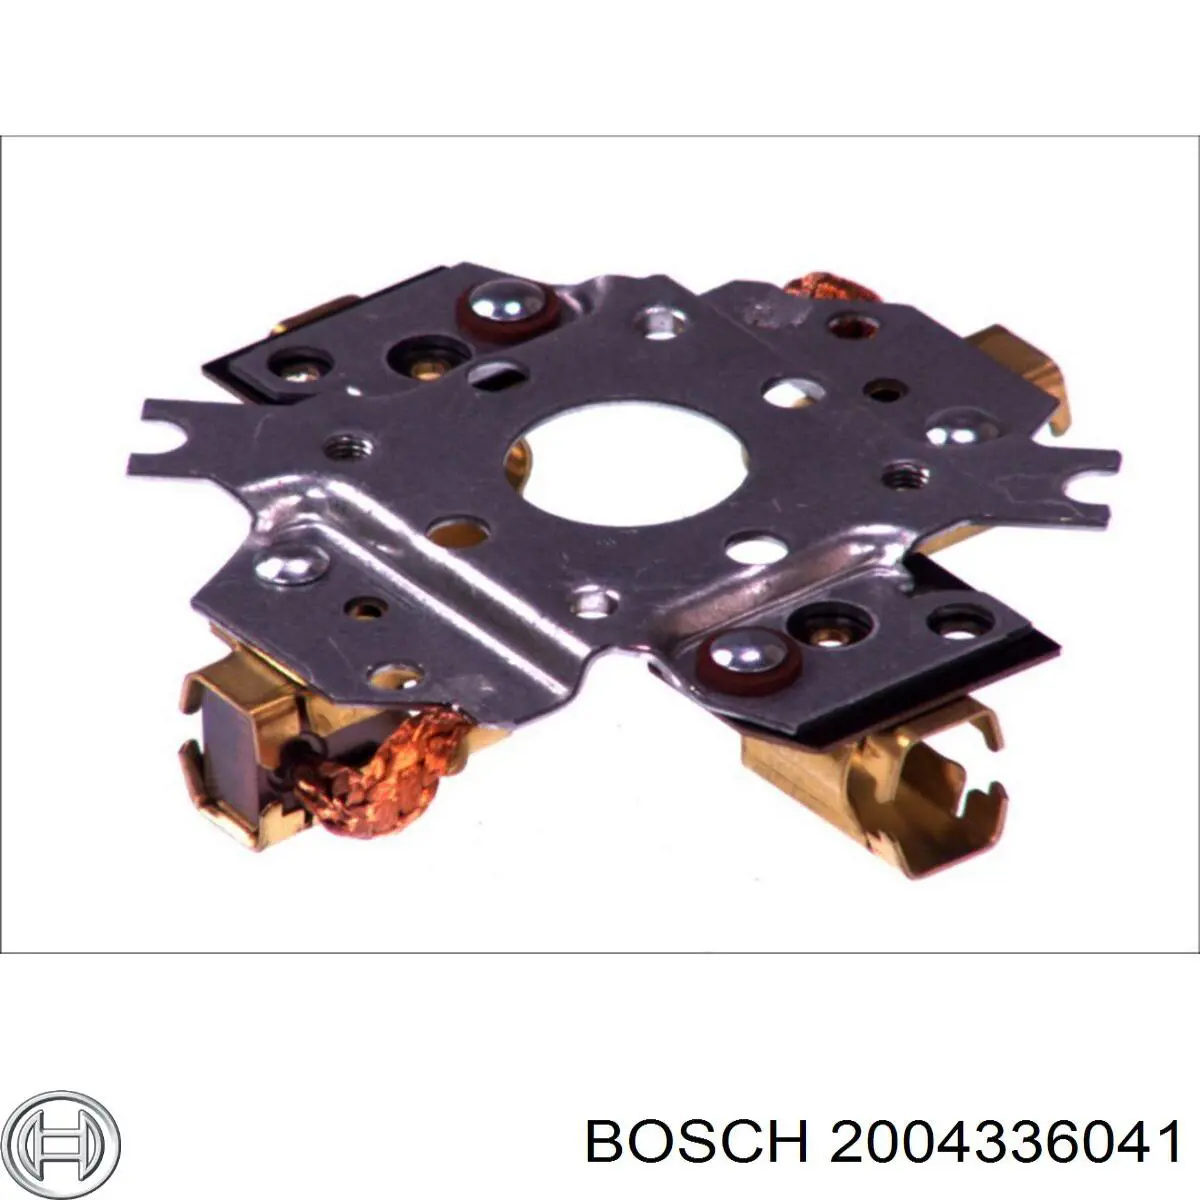 2004336041 Bosch porta-escovas do motor de arranco